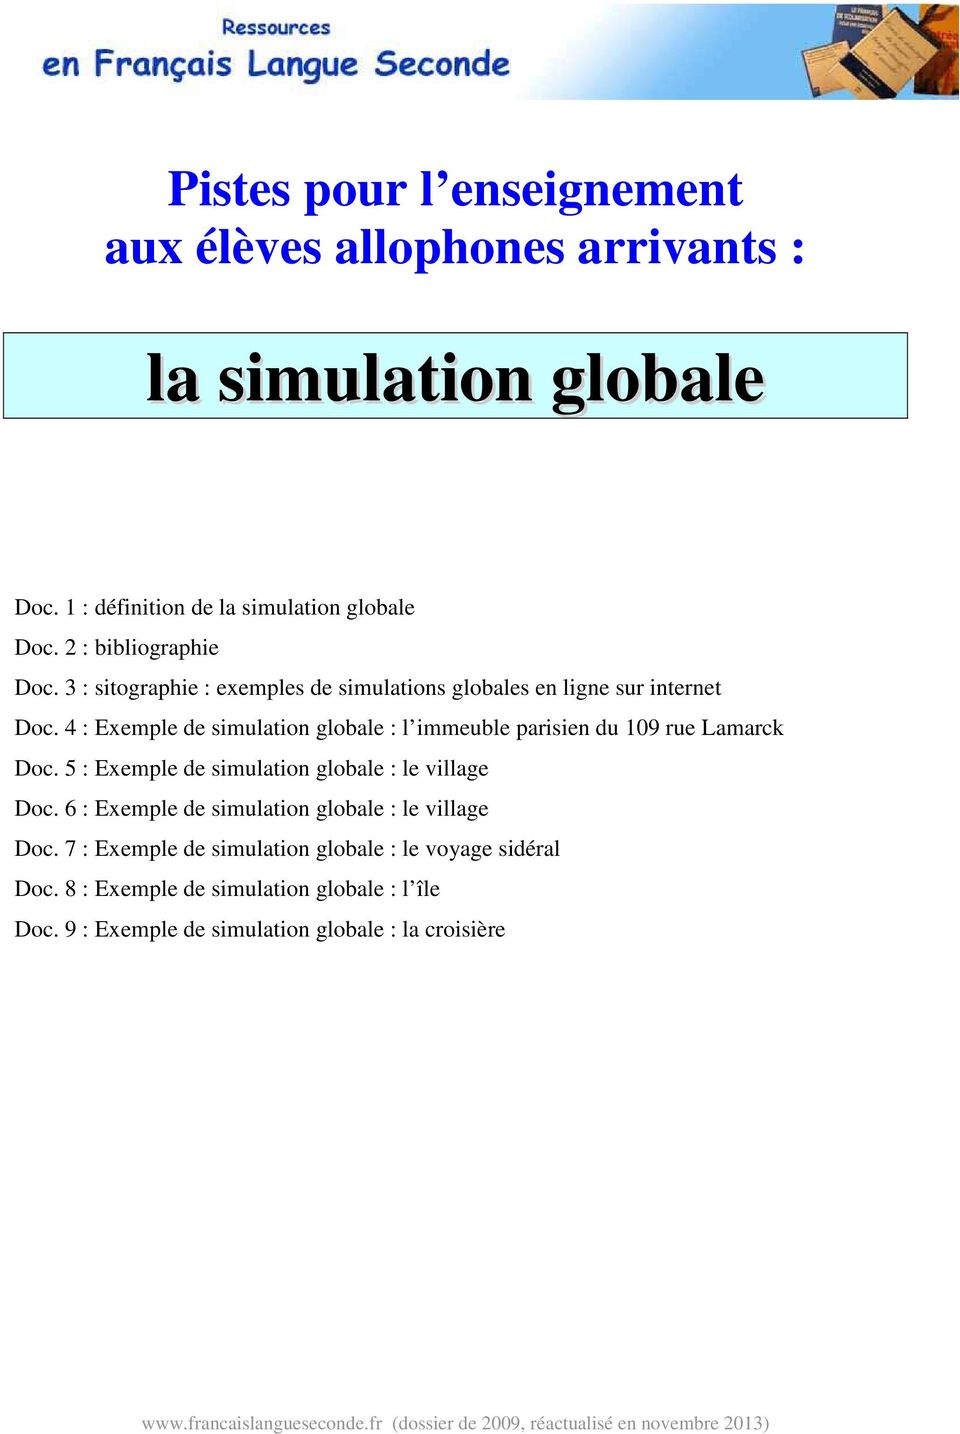 5 : Exemple de simulation globale : le village Doc. 6 : Exemple de simulation globale : le village Doc. 7 : Exemple de simulation globale : le voyage sidéral Doc.